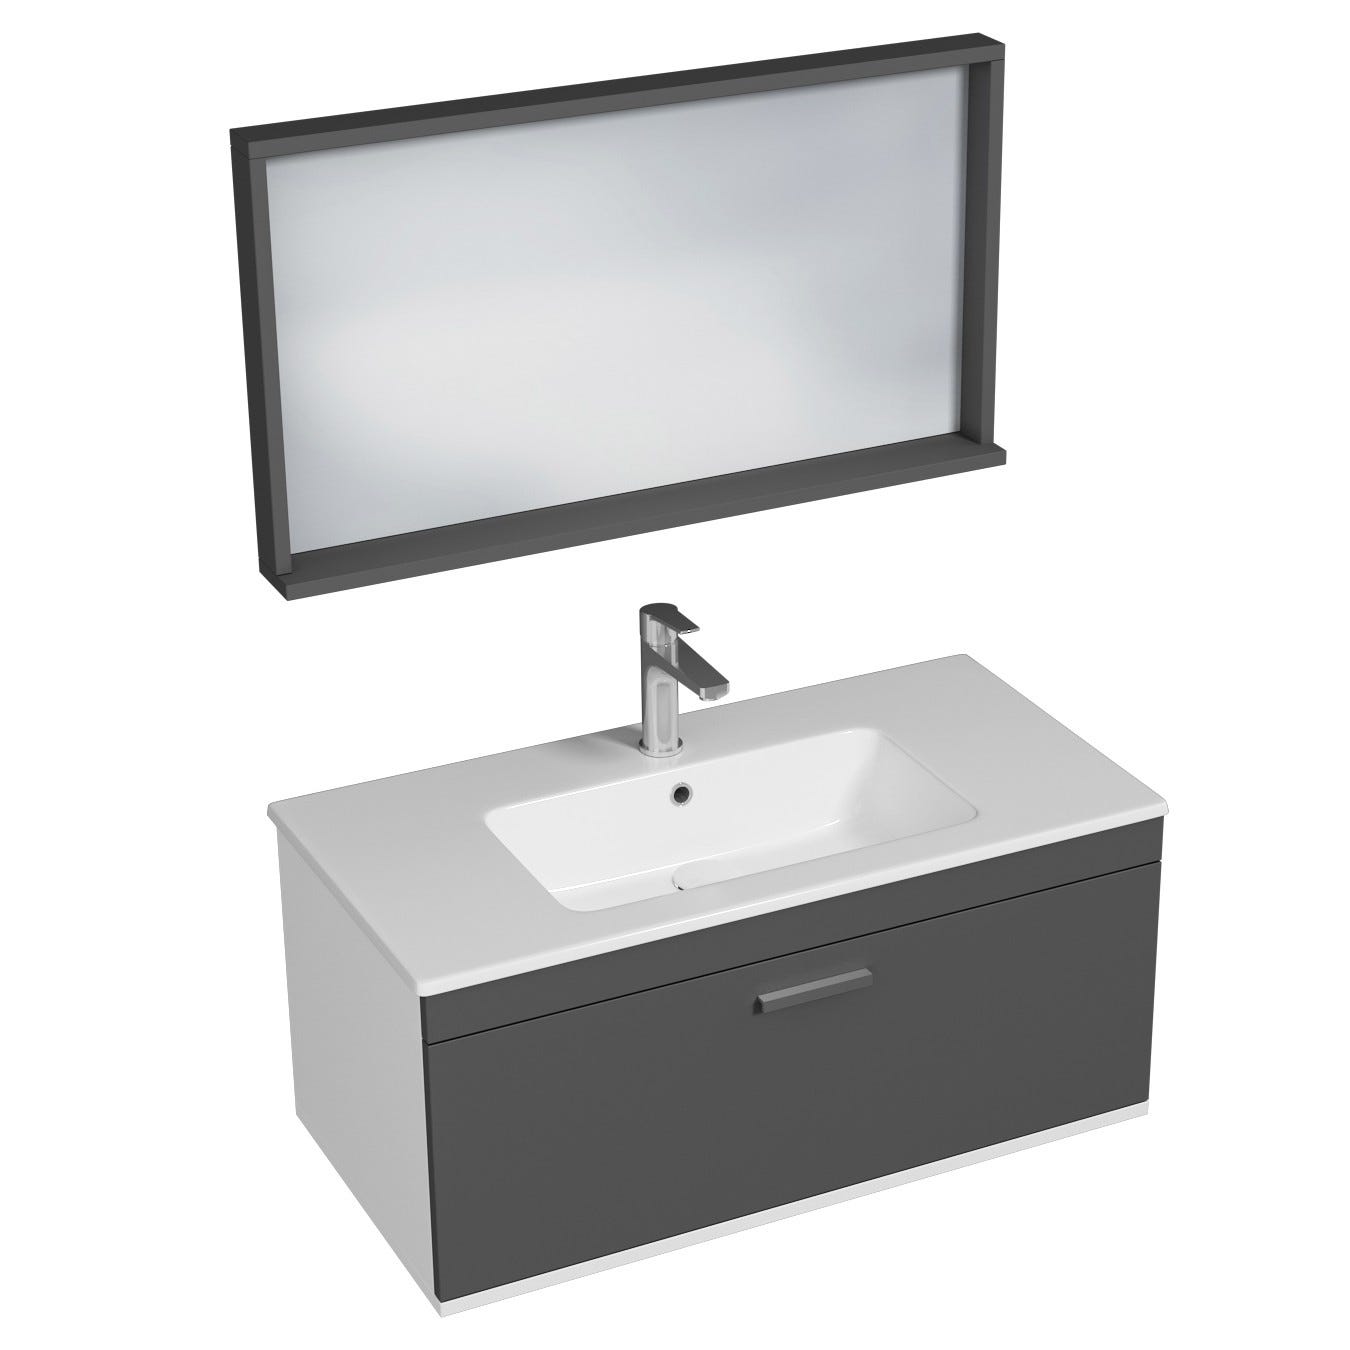 RUBITE Meuble salle de bain simple vasque 1 tiroir gris anthracite largeur 90 cm + miroir cadre 0